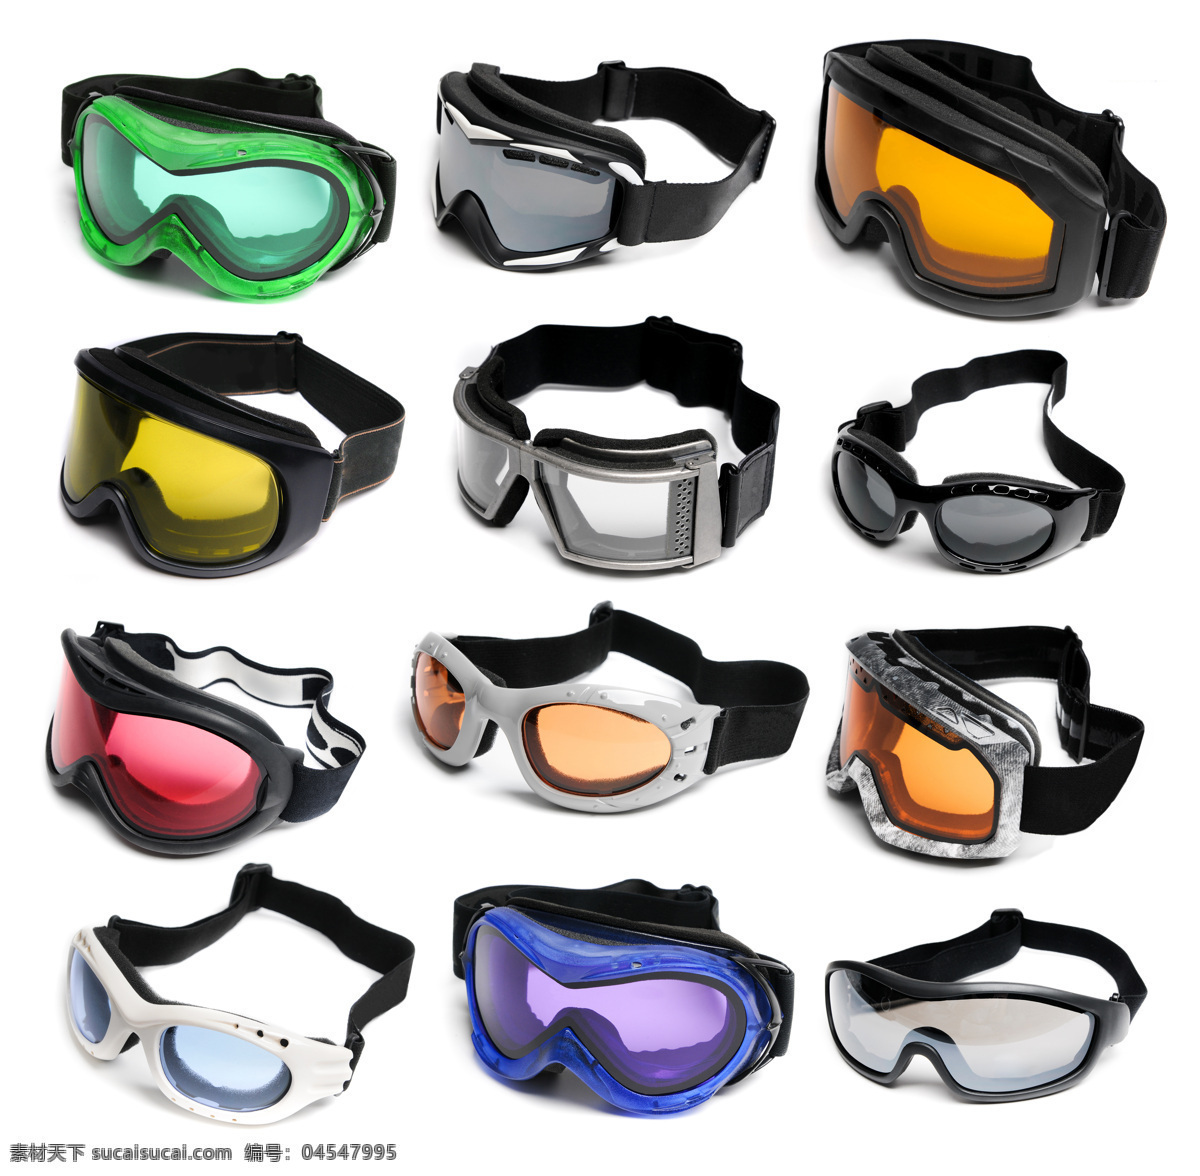 各种 滑雪 镜 眼镜 彩色 滑雪镜 运动设备 滑雪图片 生活百科